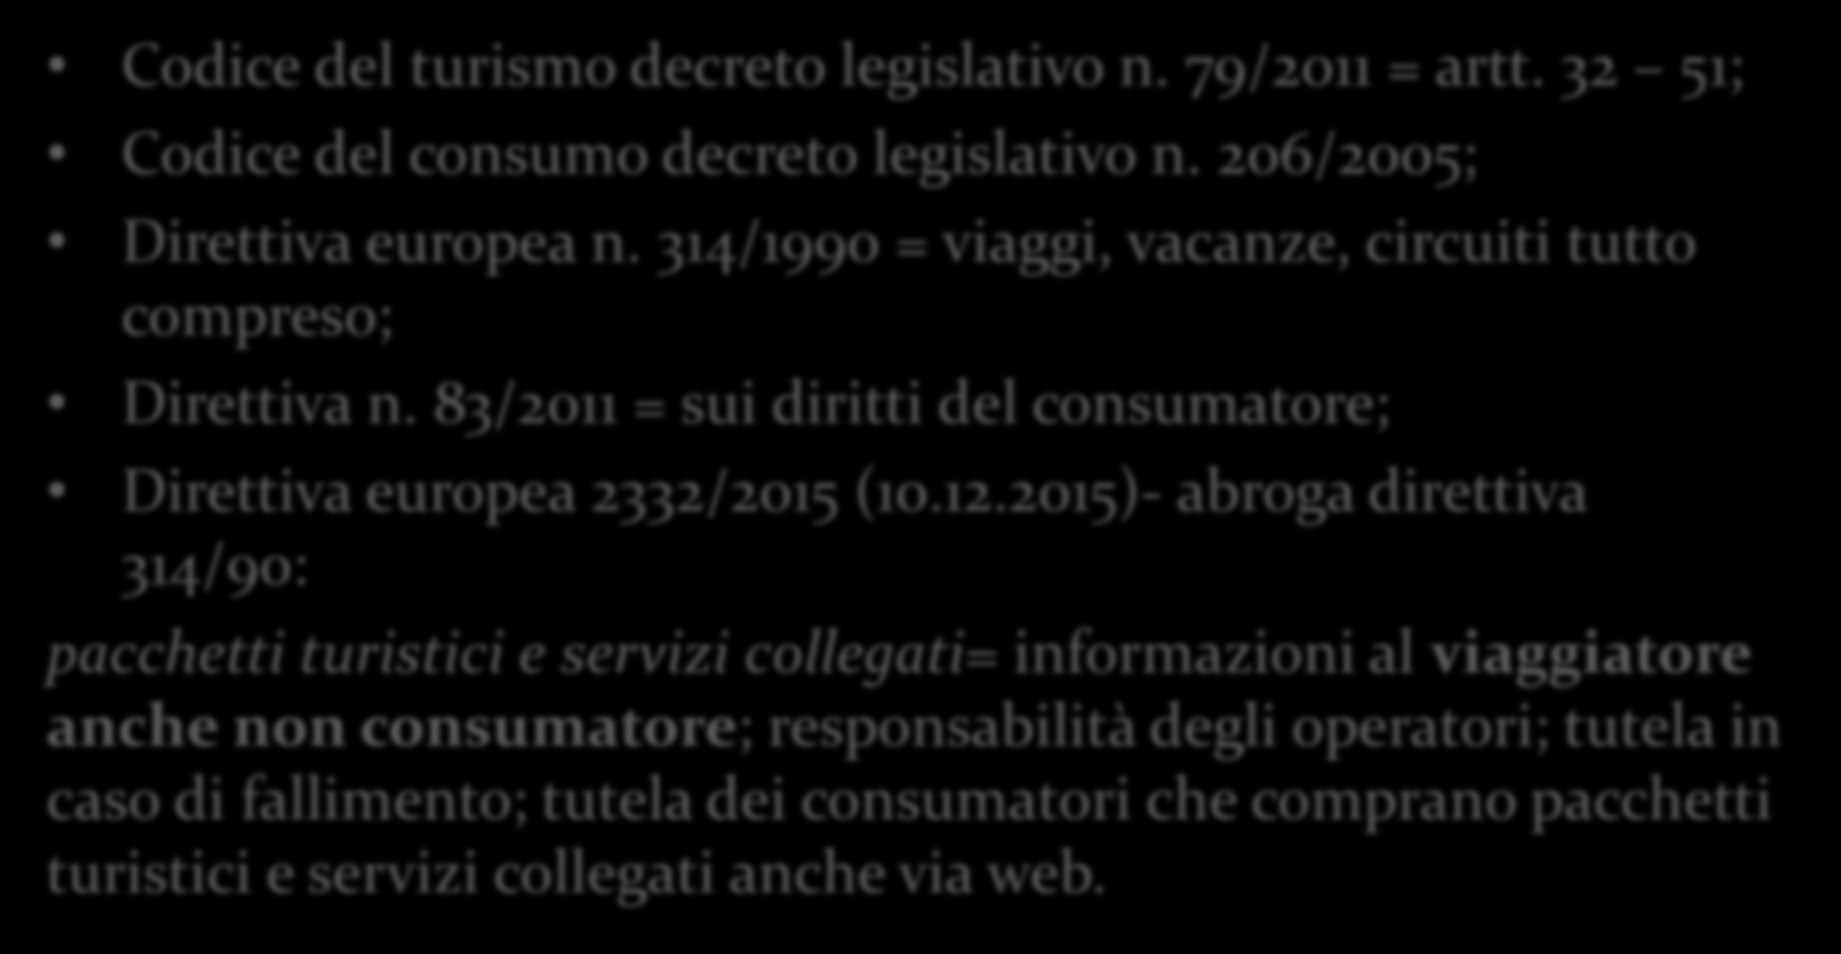 Codice del turismo decreto legislativo n. 79/2011 = artt. 32 51; Codice del consumo decreto legislativo n. 206/2005; Direttiva europea n.